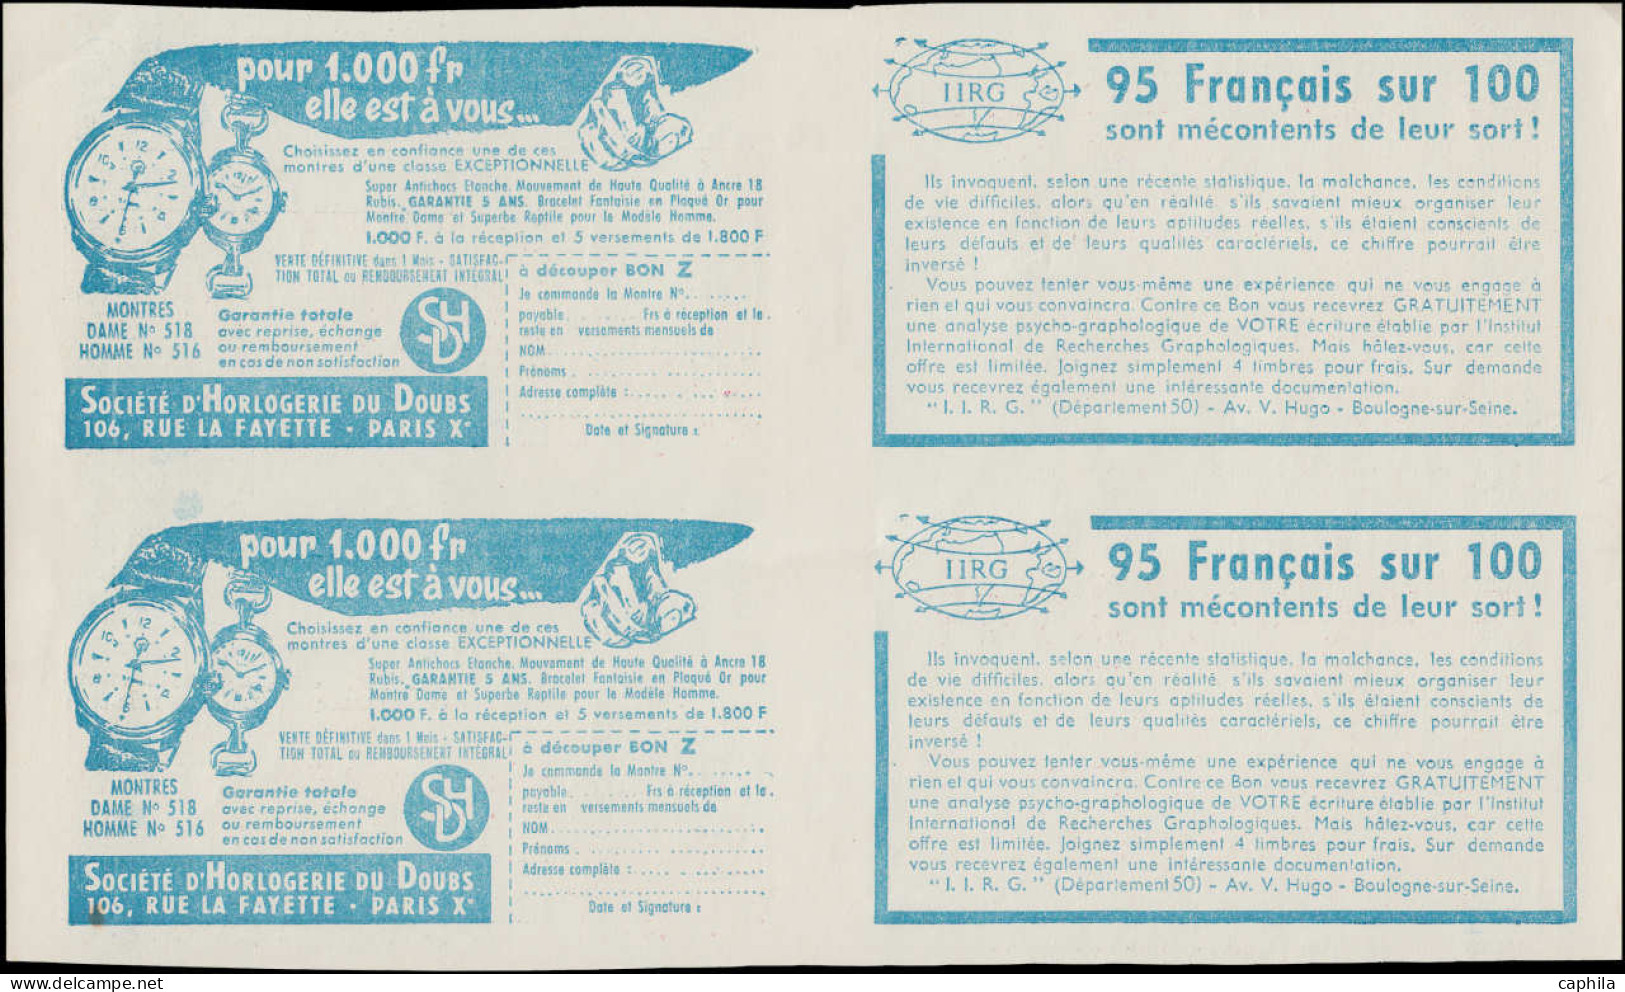 ESS FRANCE - Carnets - 1011B, Collection exceptionnelle de 20 couvertures de carnets en paires toutes se tenant (S.7.57 